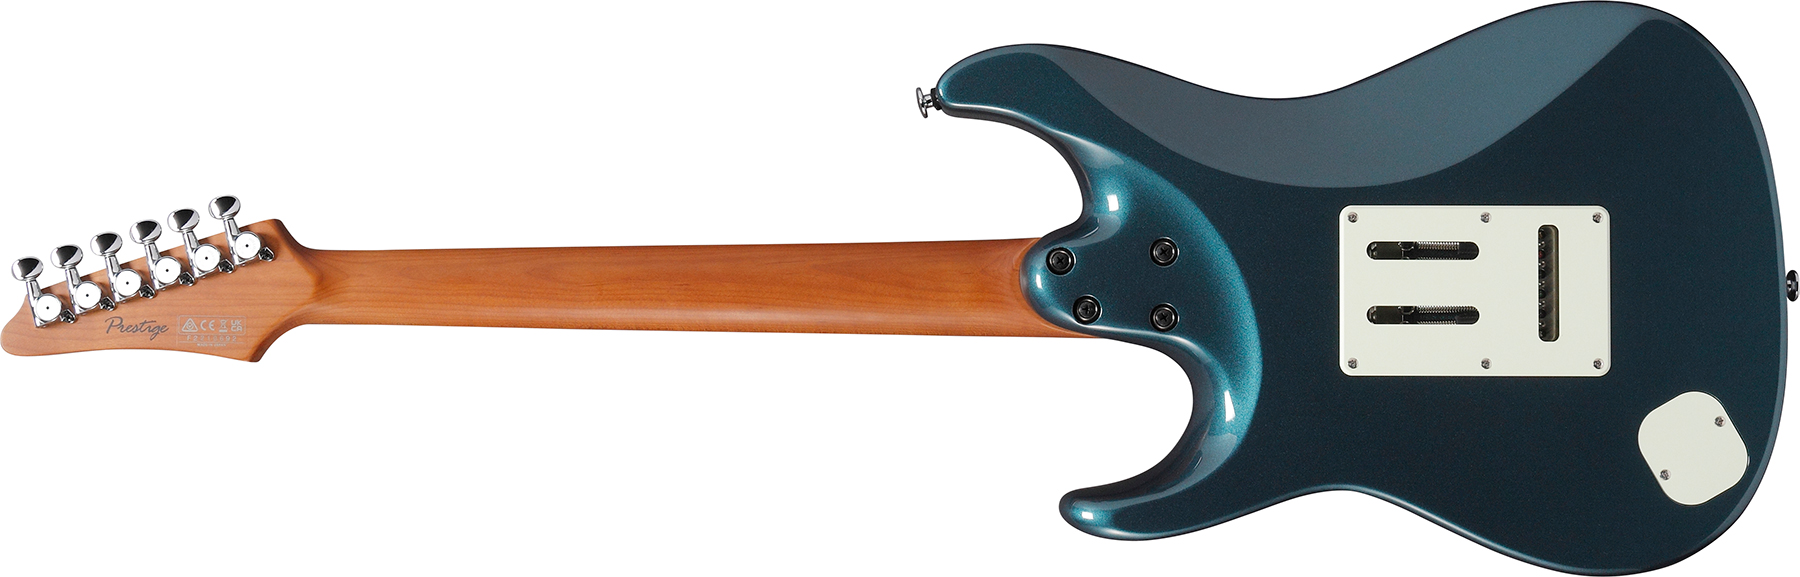 Ibanez Az2203n Atq Prestige Jap 3s Seymour Duncan Trem Rw - Antique Turquoise - Str shape electric guitar - Variation 1